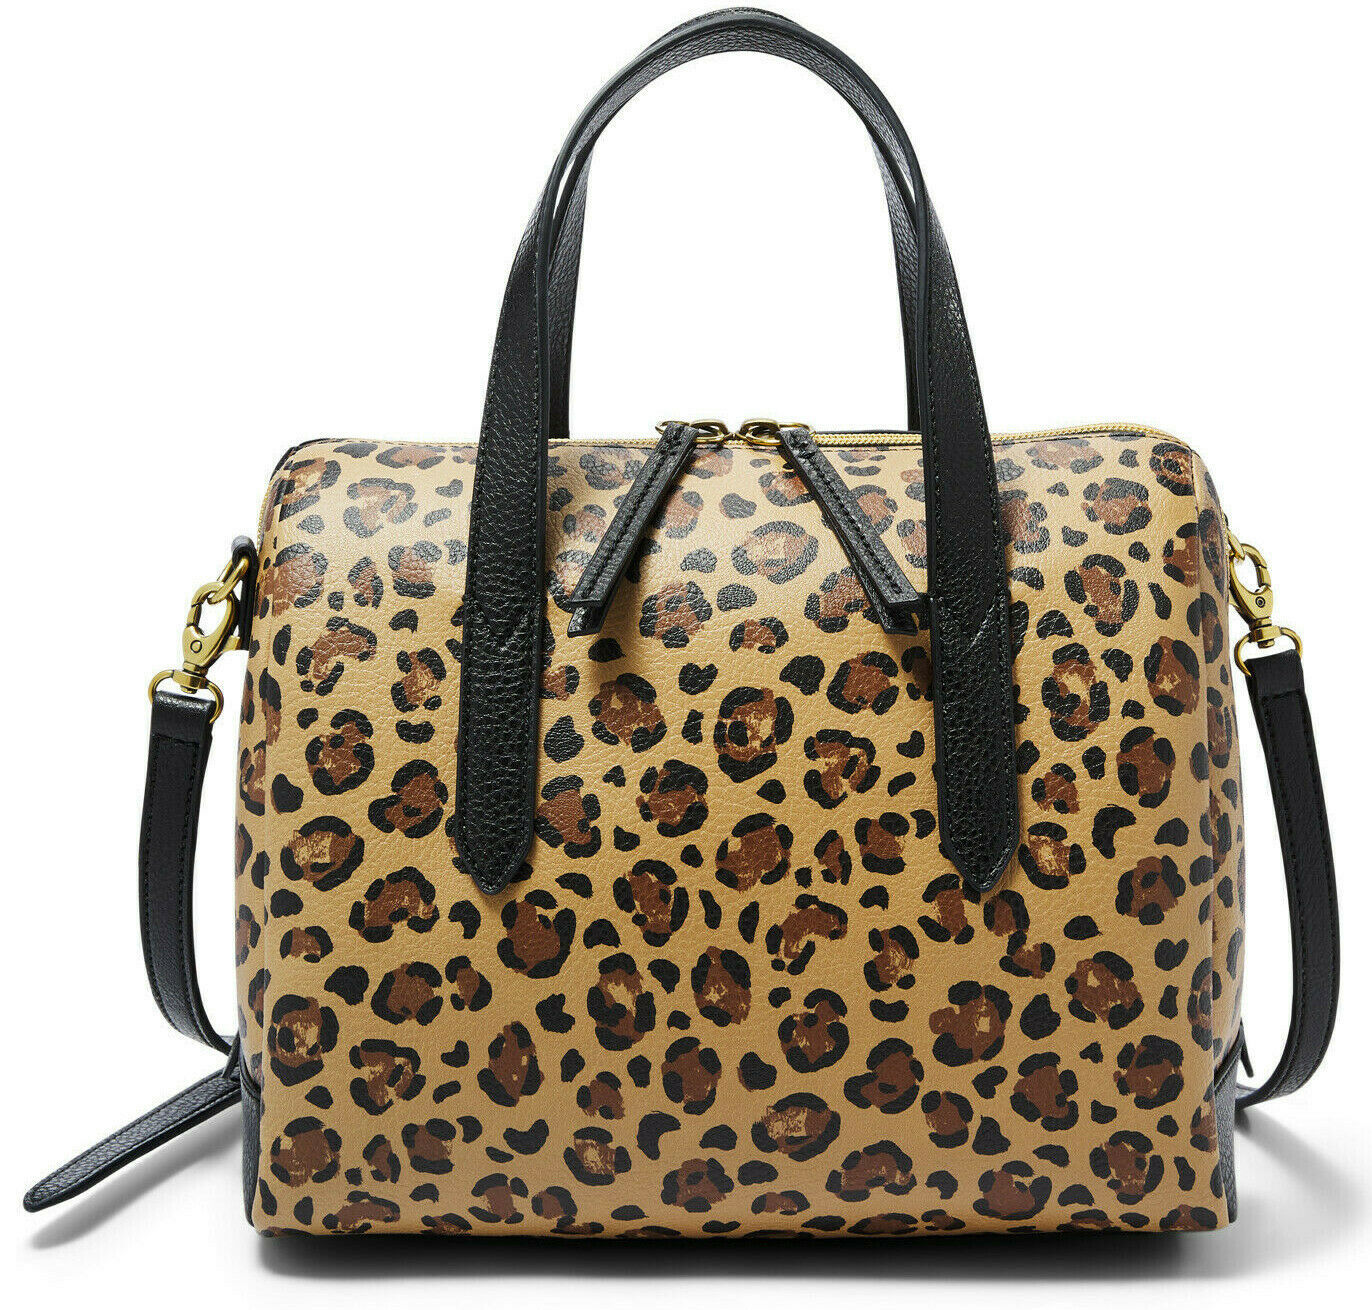 NWB Fossil Sydney Satchel Cheetah Handbag Leopard SHB2351989 X-body Dust Bag FS